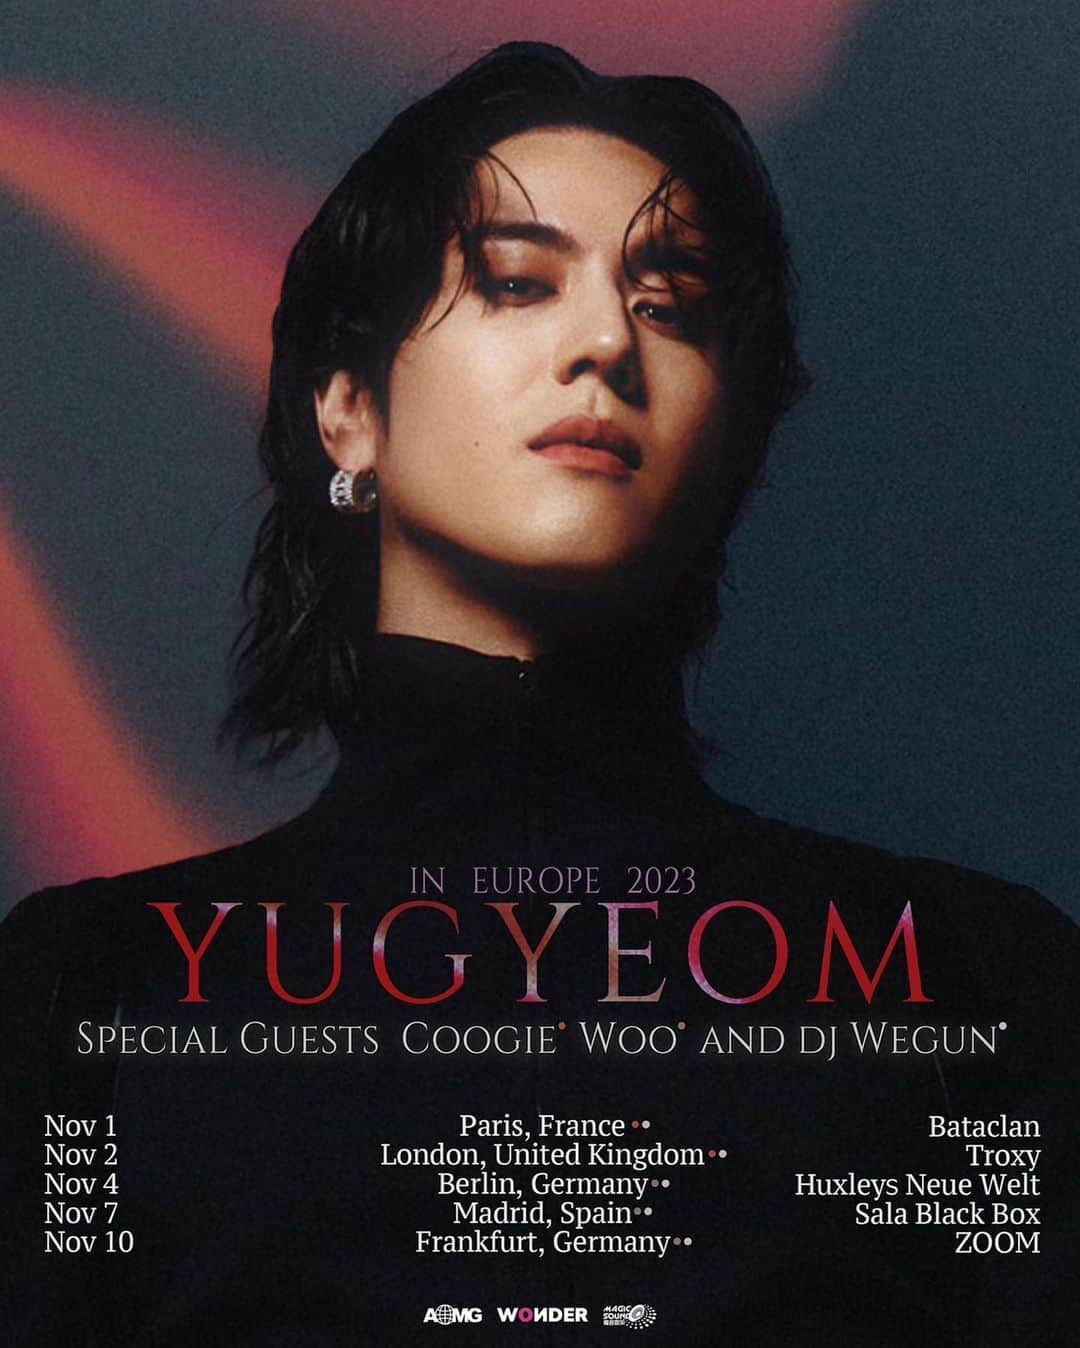 ユギョム のインスタグラム：「[유겸 (YUGYEOM), 쿠기(Coogie), 우원재(Woo), DJ Wegun (DJ 웨건)] YUGYEOM IN EUROPE 2023  We got Coogie, Woo and DJ Wegun as a special guest in Europe!  TIX.TO/YUGYEOMEUROPE2023  <Tour Dates> (Coogie, DJ Wegun) Nov 1st: Paris, Bataclan Nov 2nd: London, Troxy  (Woo, DJ Wegun) Nov 4th: Berlin, Huxleys Neue Welt Nov 7th: Madrid, Sala Black Box Nov 10th: Frankfurt, ZOOM  @yugyeom #유겸 #YUGYEOM @coogie #쿠기 #Coogie @munchinthepool #우원재 #Woo @djwegun #DJWegun #DJ웨건 #YUGYEOMinEurope2023 #AOMG」